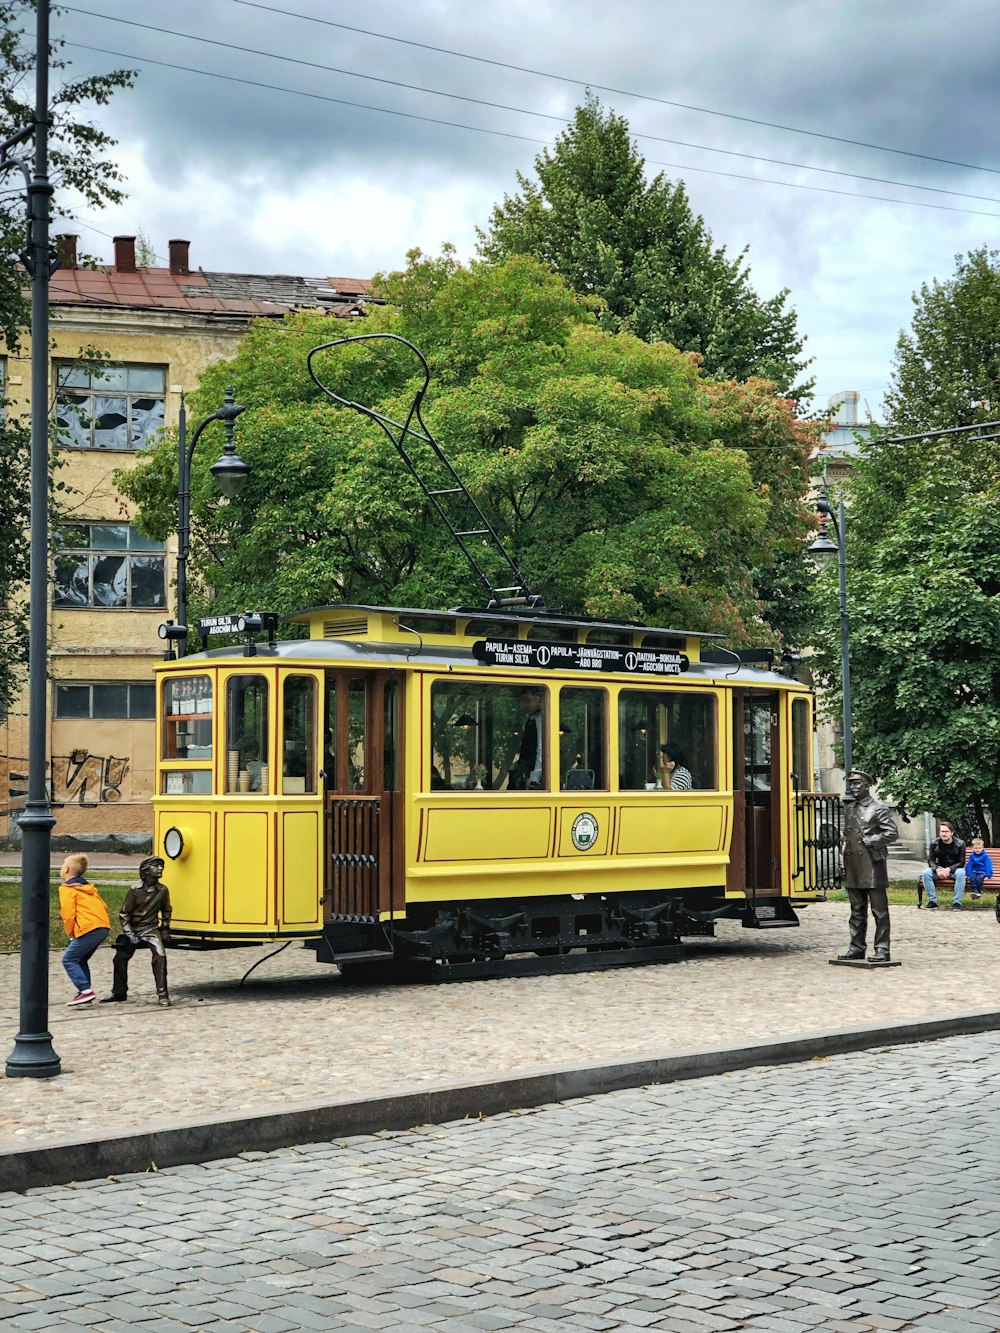 Drei Statuen neben der gelben Straßenbahn während des Tages